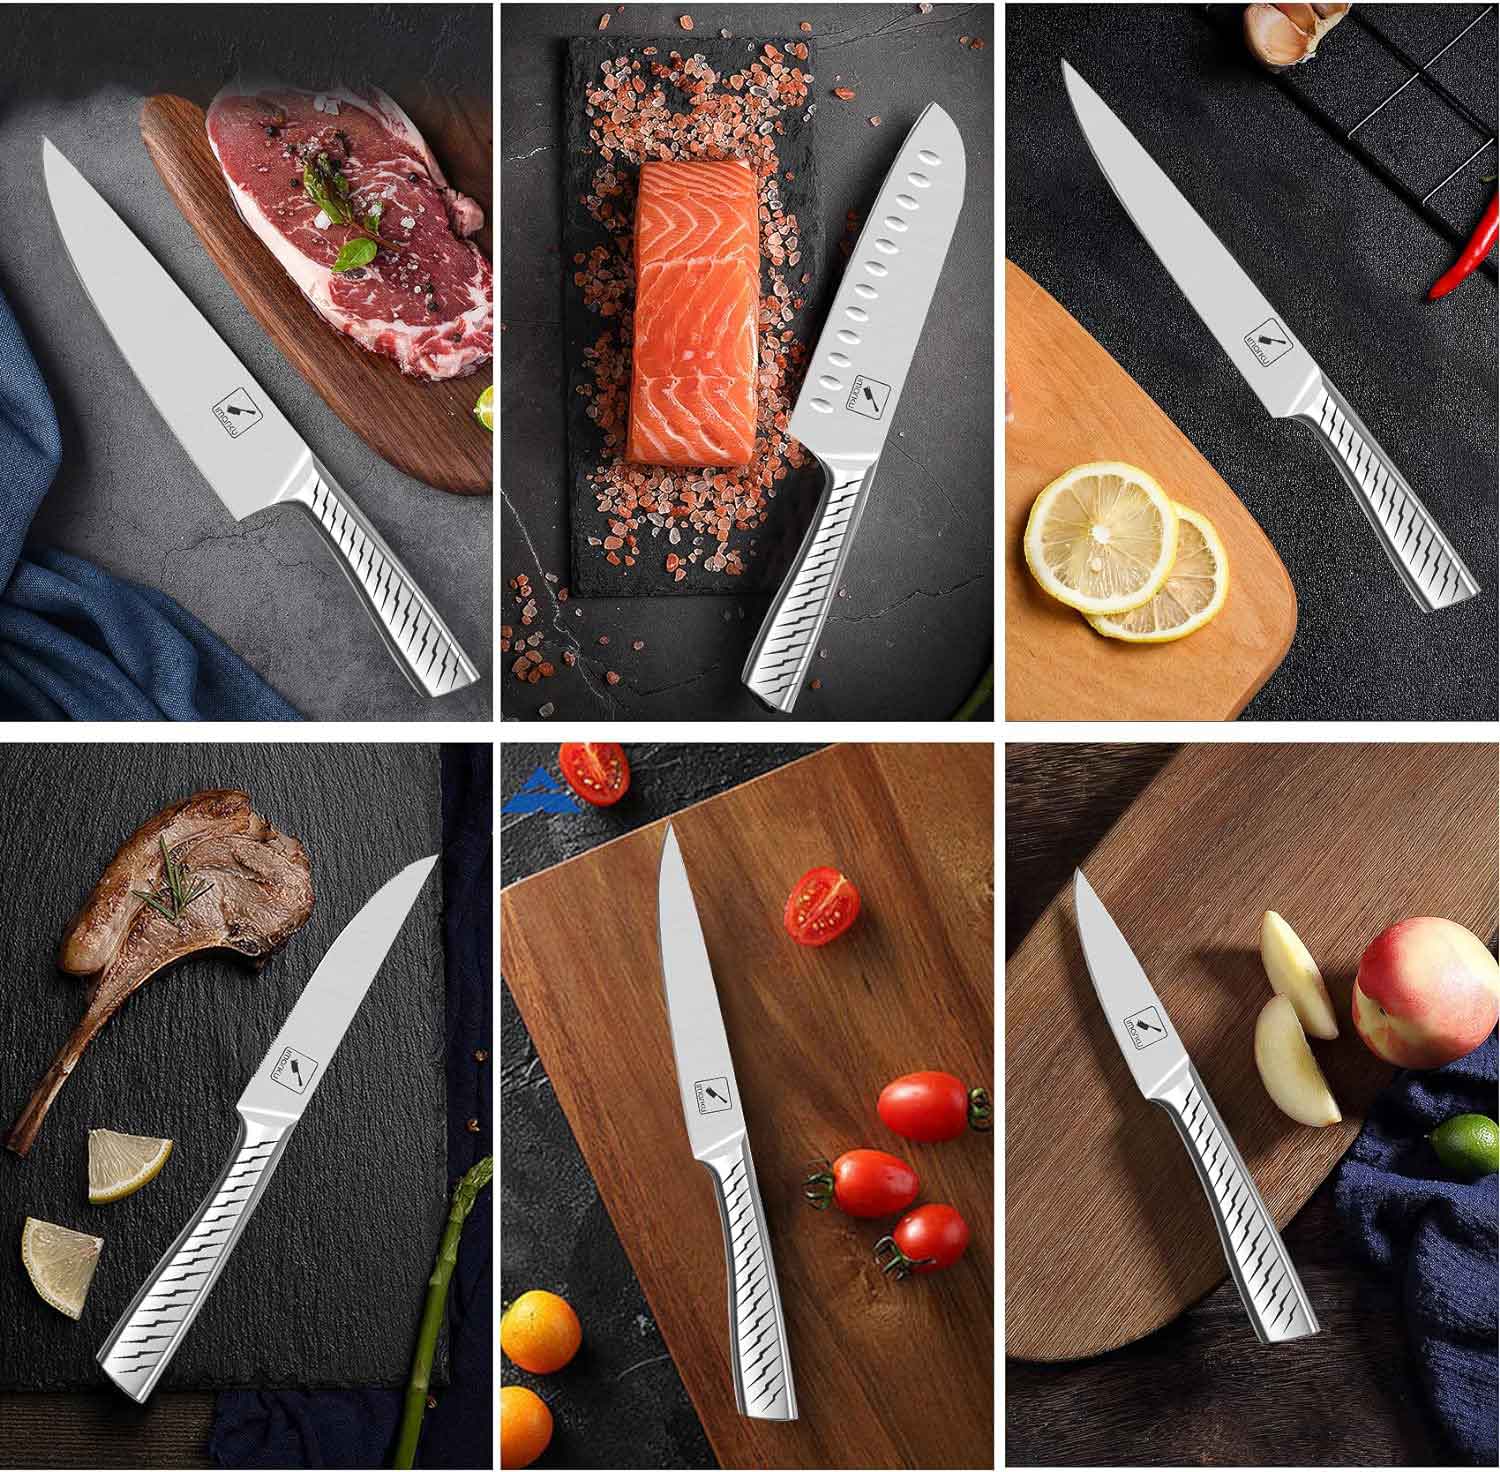 imarku Knife Set - Kitchen Knife Set 15 Pieces Japanese Stainless Steel  Knife Block Set with Sharpener - Dishwasher Safe Kitchen Knives - Ultra  Sharp